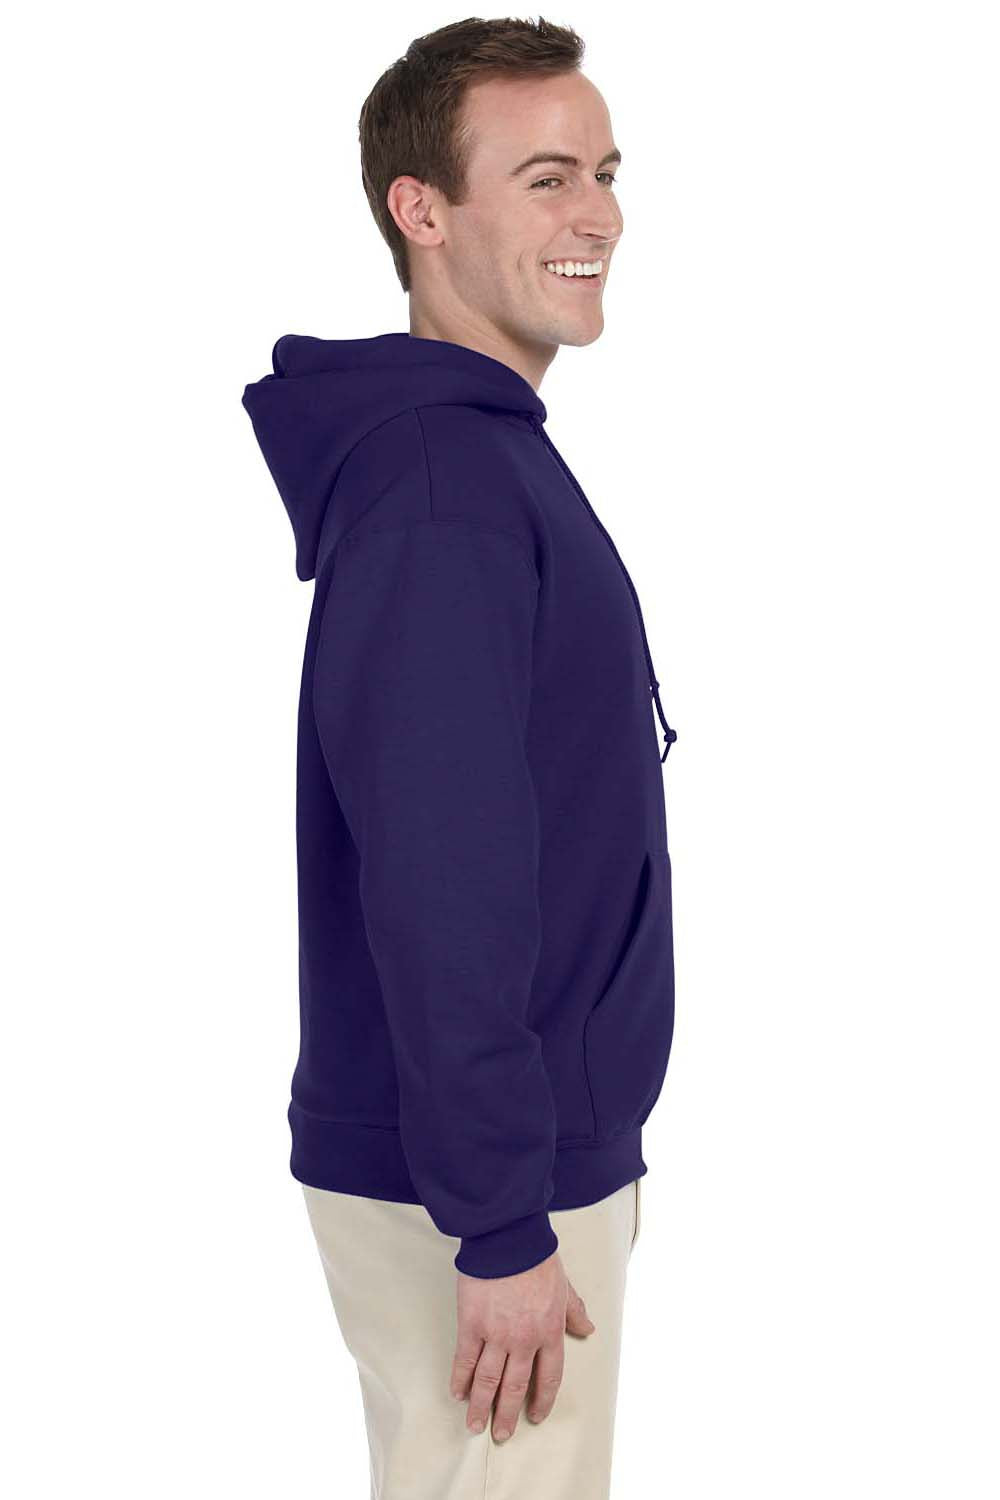 Jerzees 996 Mens NuBlend Fleece Hooded Sweatshirt Hoodie Purple Side